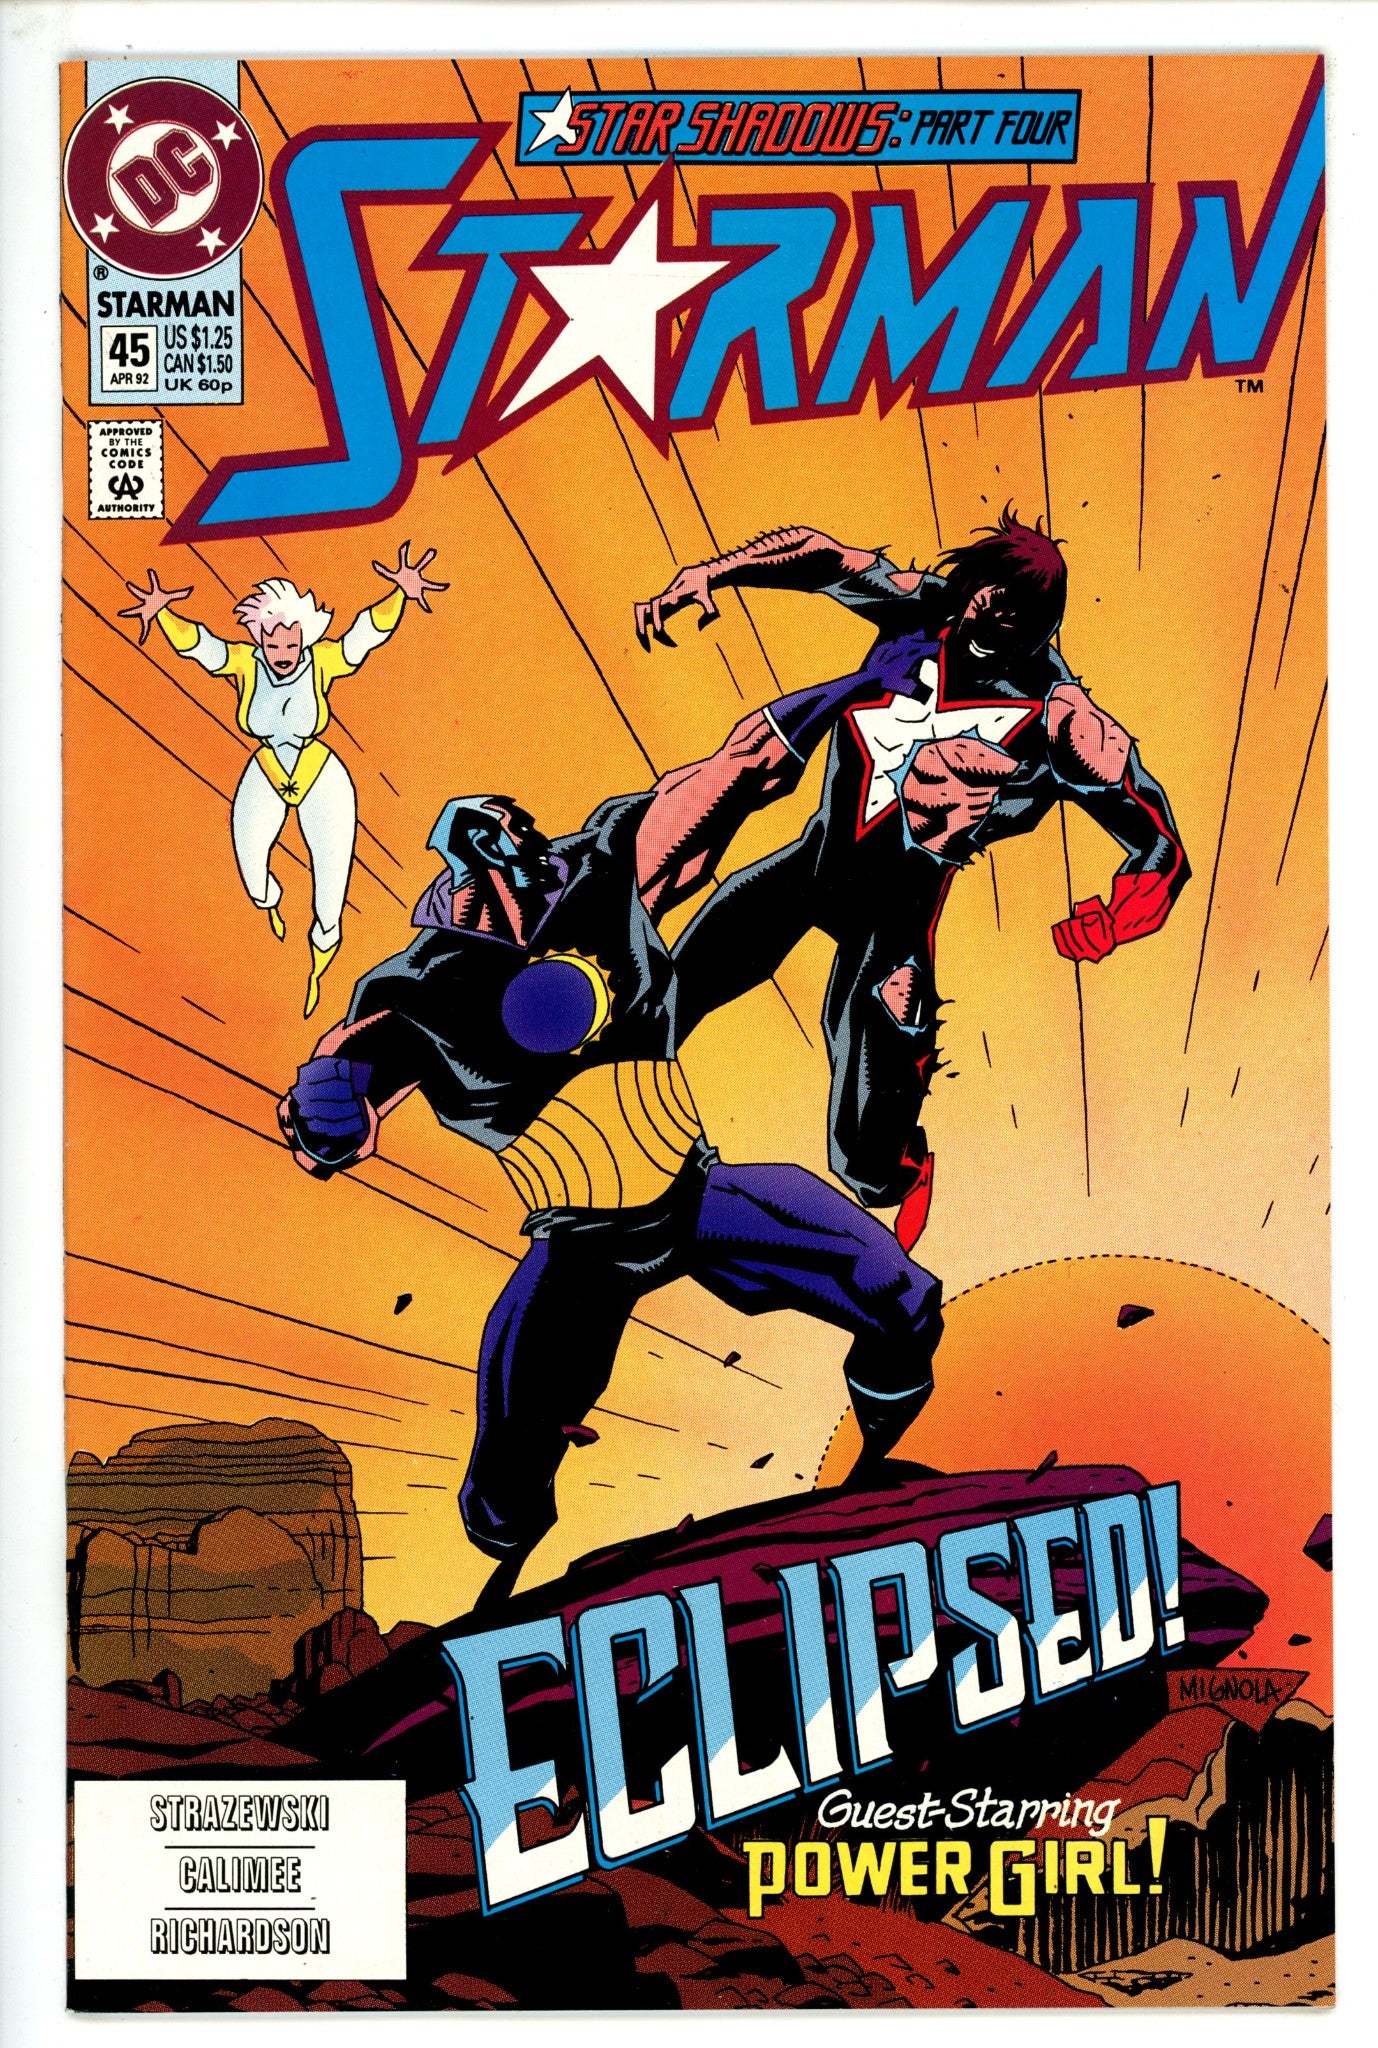 Starman Vol 1 45 (1992)